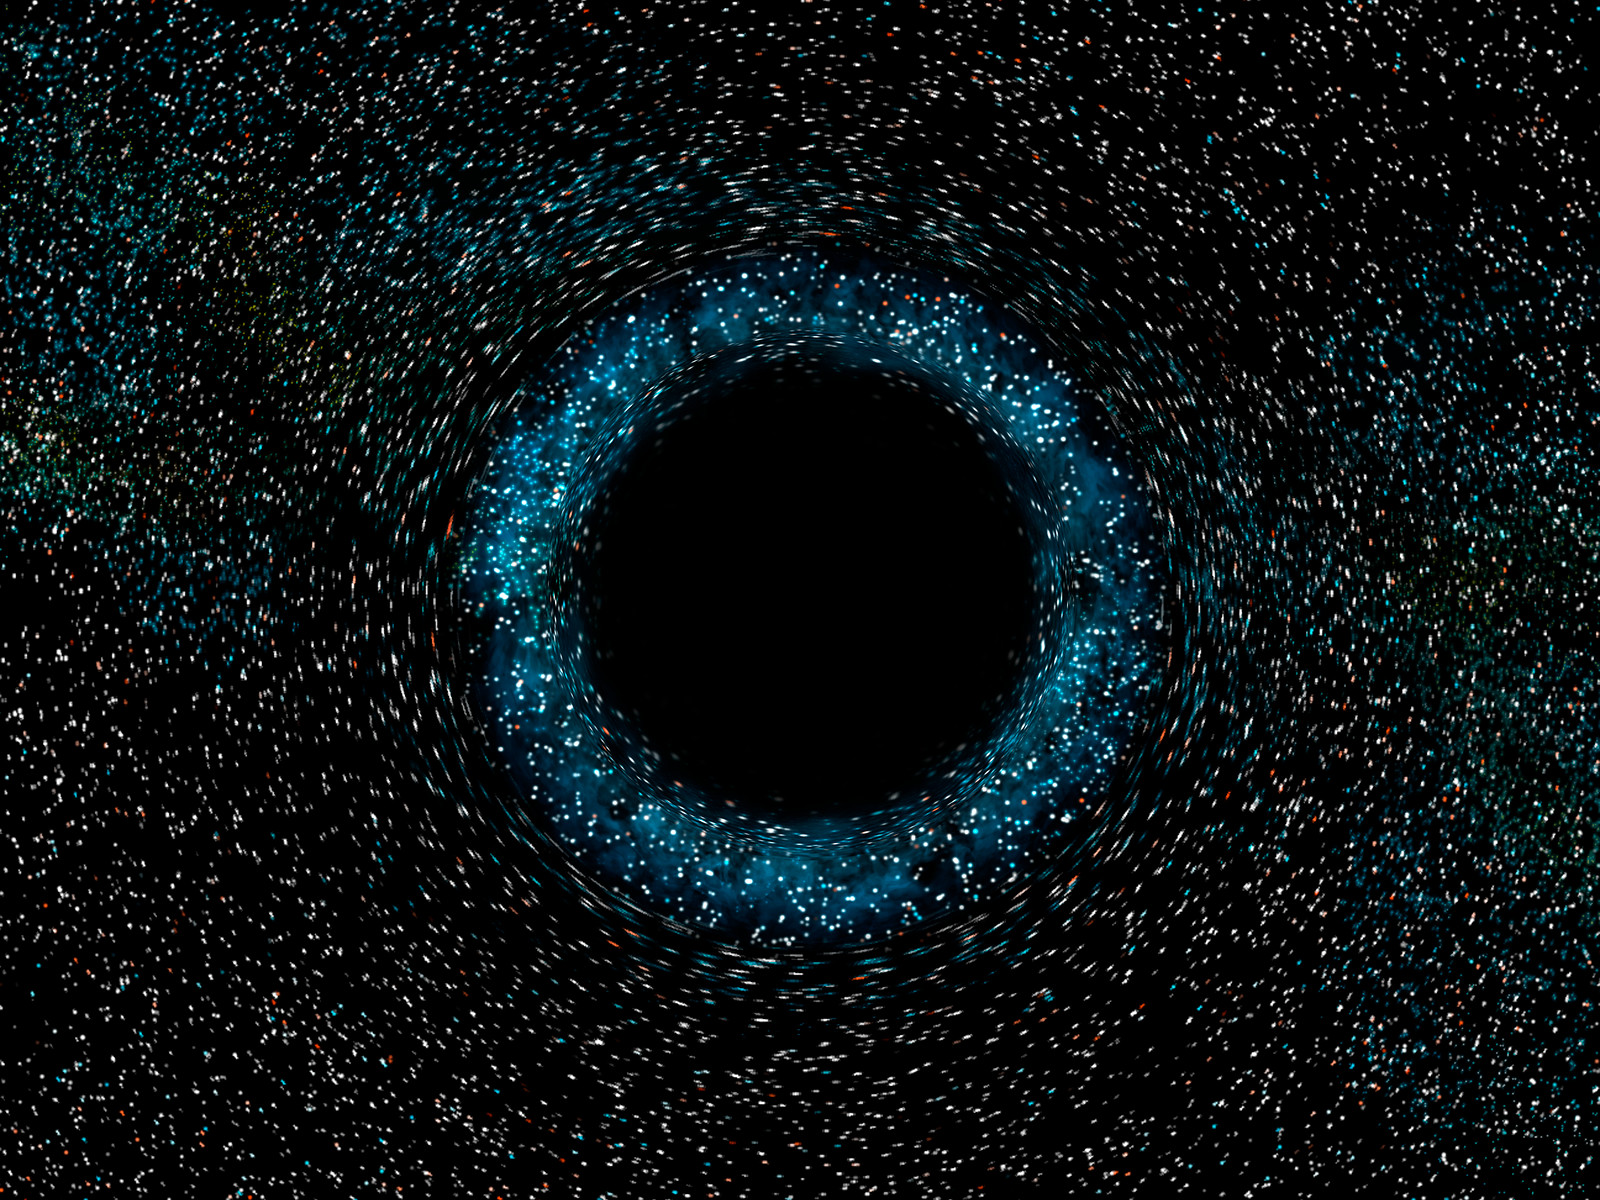 Black Hole Artist S Impression Esa Hubble